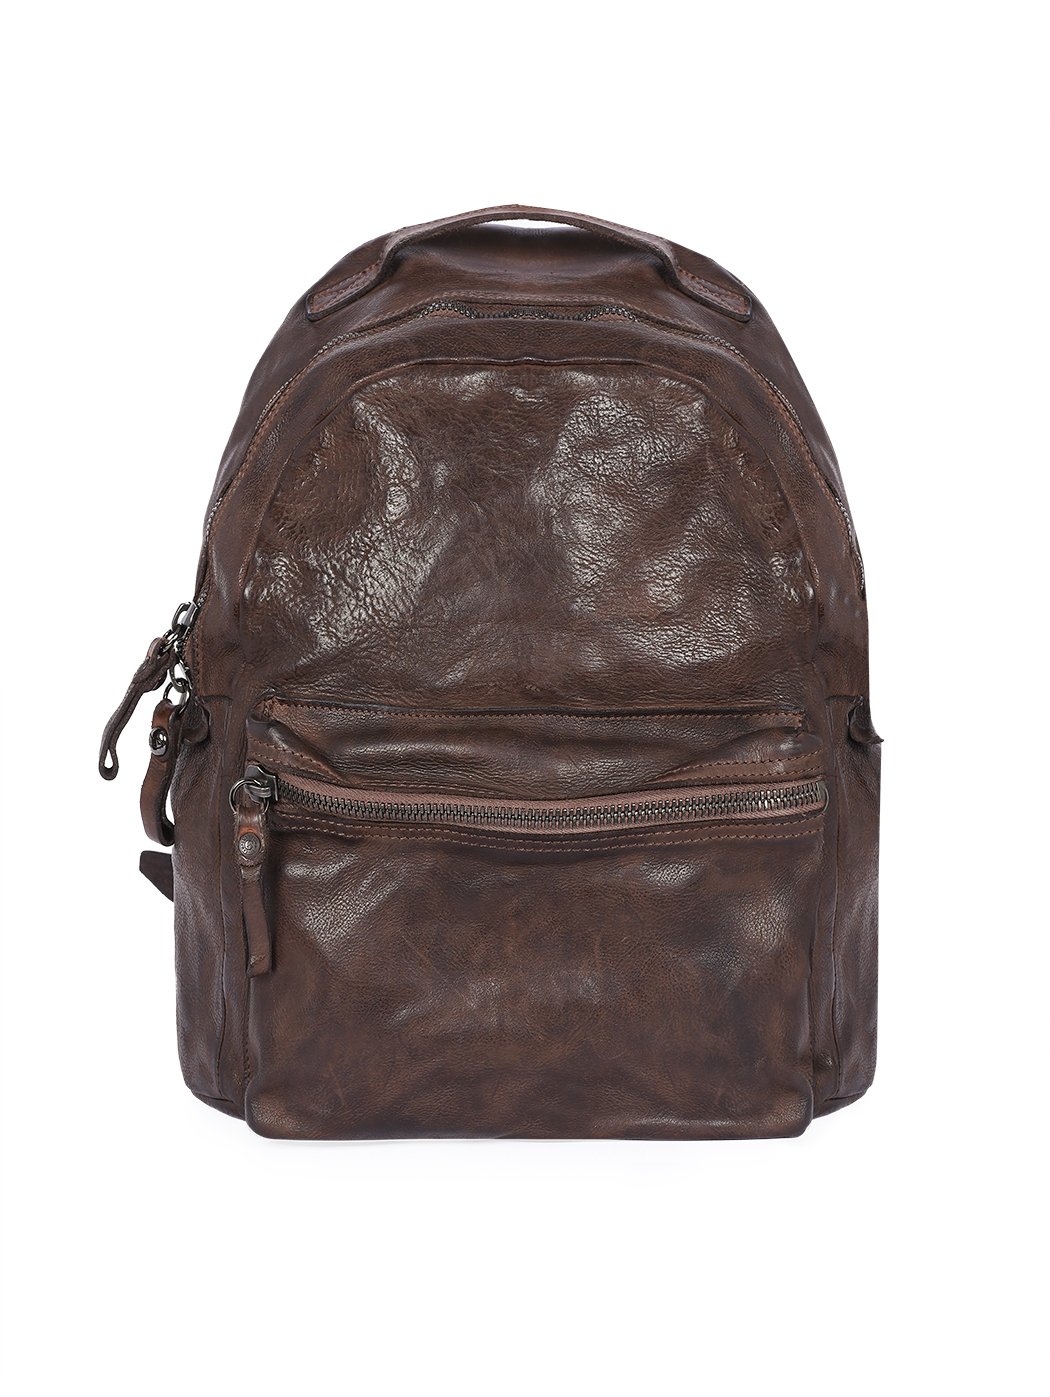 Кожаный рюкзак в стиле винтаж, унисекс темно коричневый